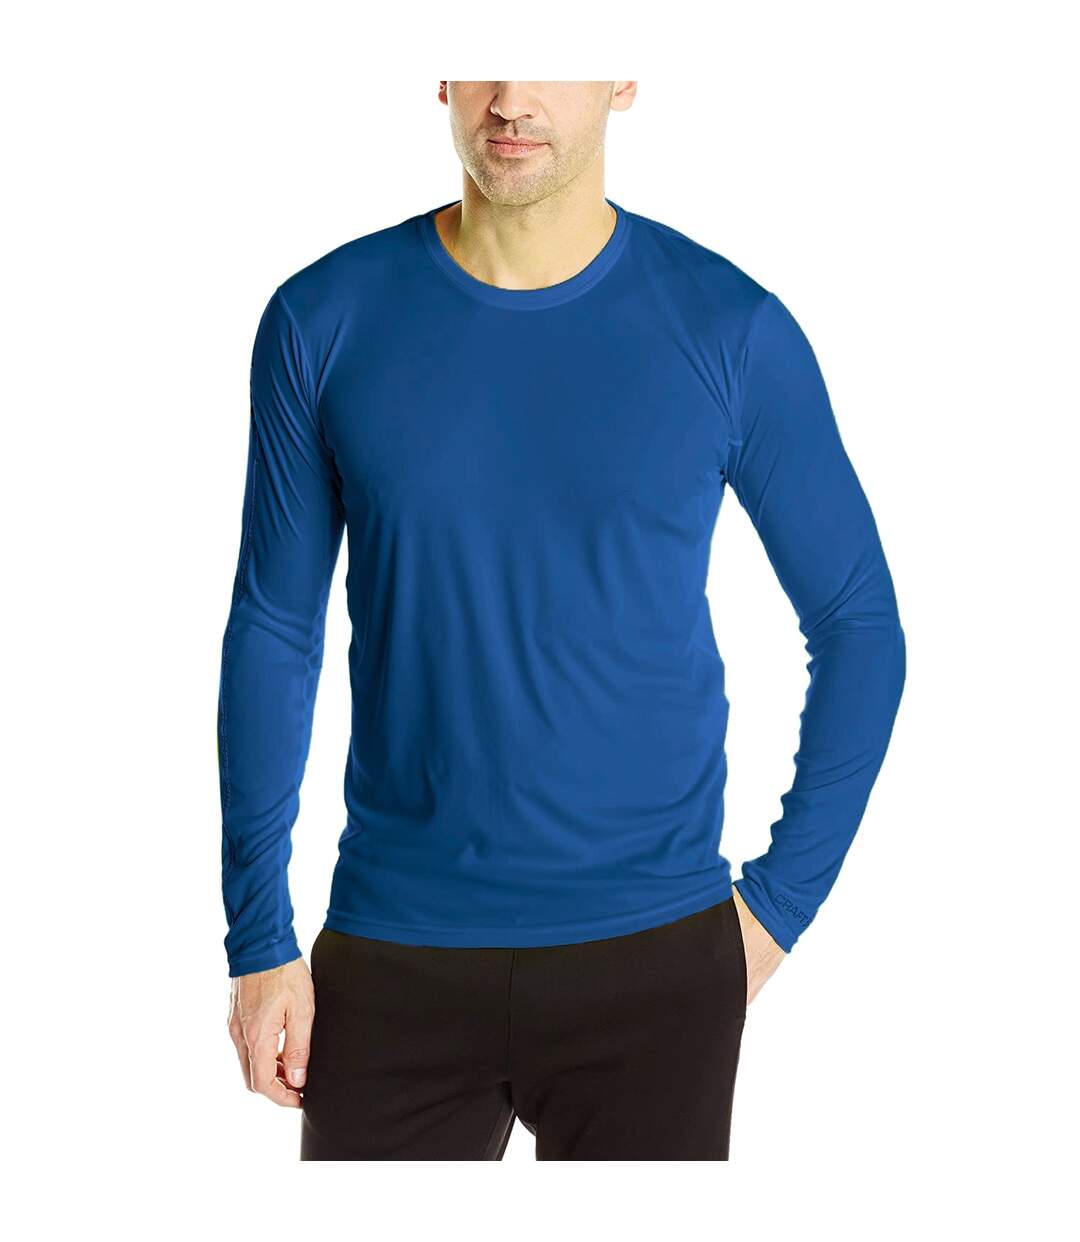 Craft - T-shirt manches longues MIND - Homme (Bleu) - UTRW6154